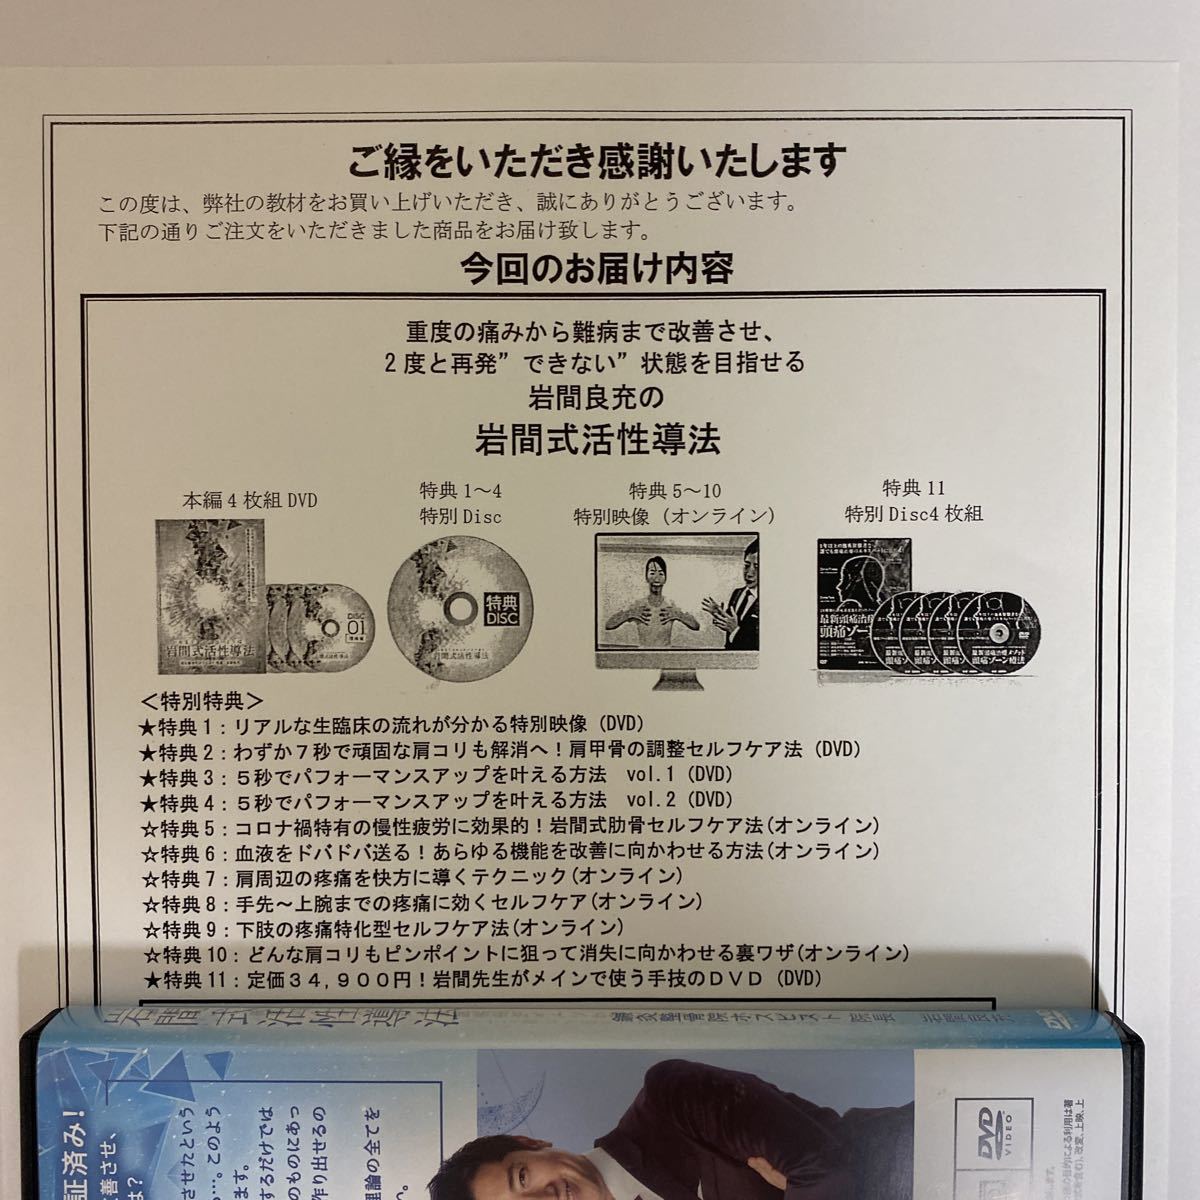 税込】 整体DVD計5枚手技DVD overdekook.com